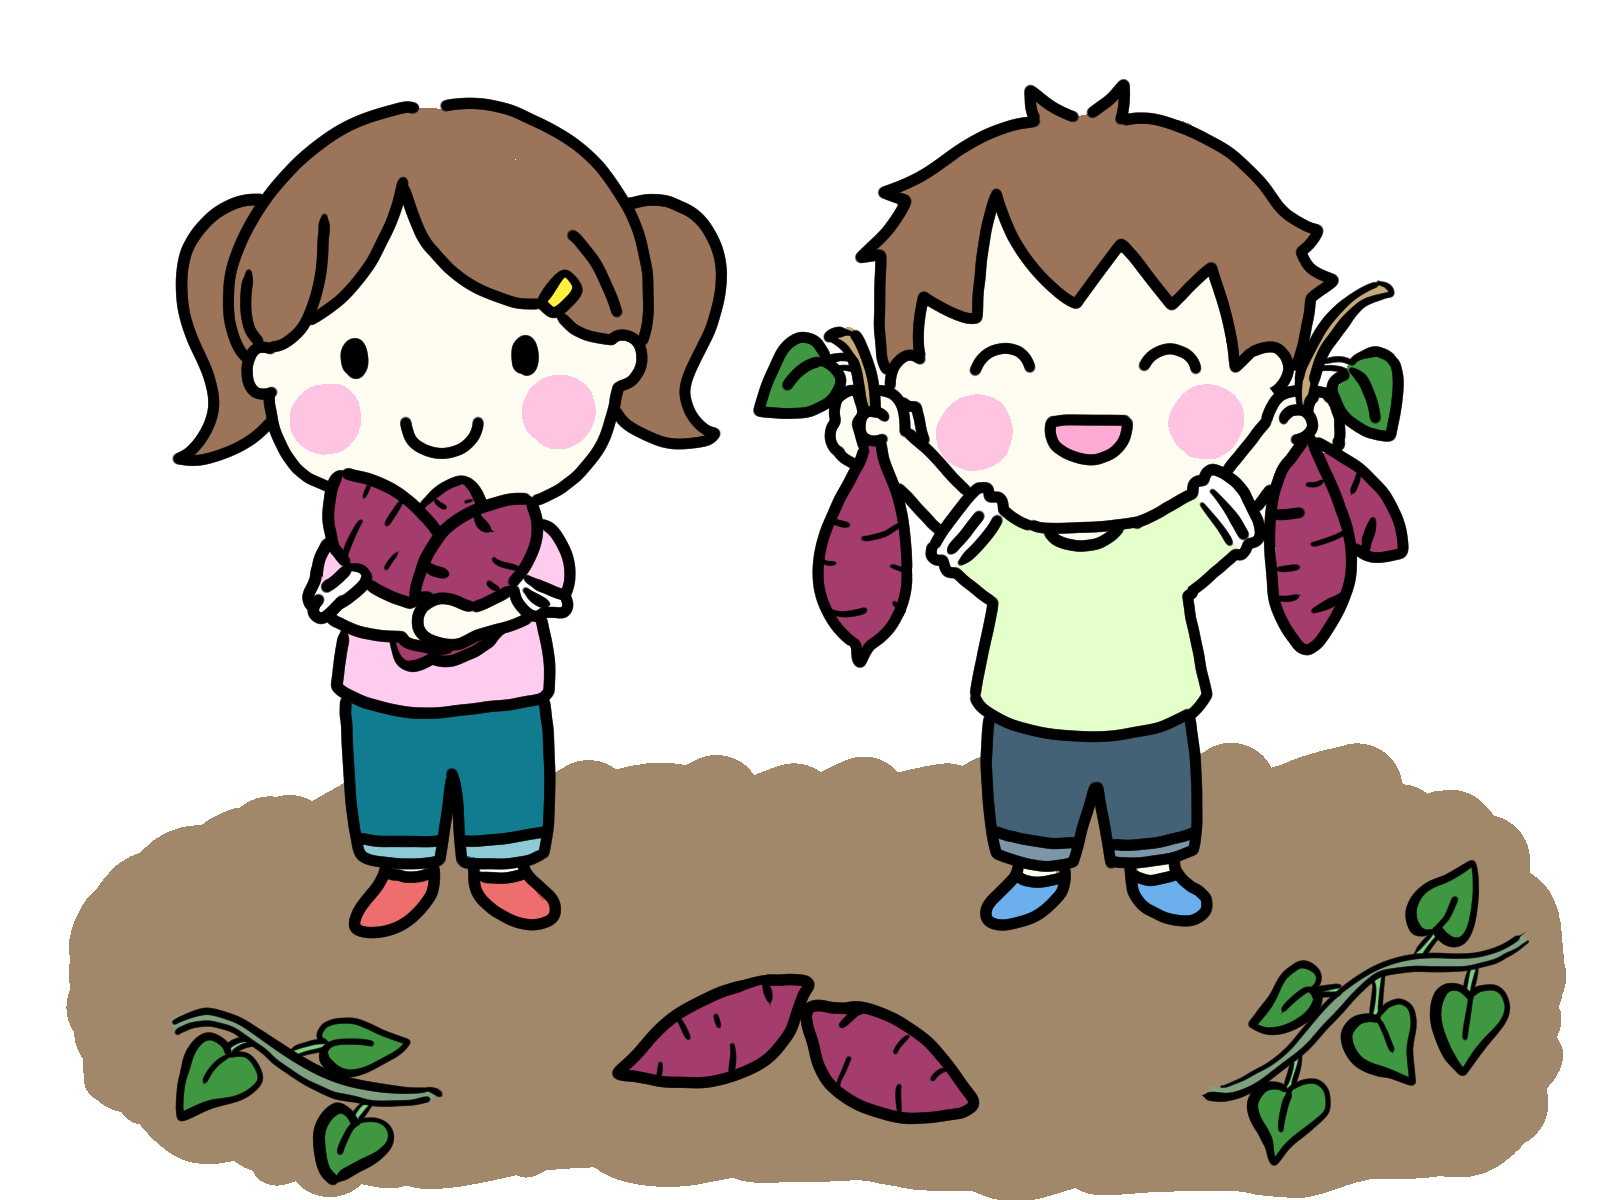 ＜5月21日･10月22日＞1家族500円でできる苗植え～収穫体験！5月にサツマイモの苗を植えて、10月に収穫しよう！大津市内在住対象